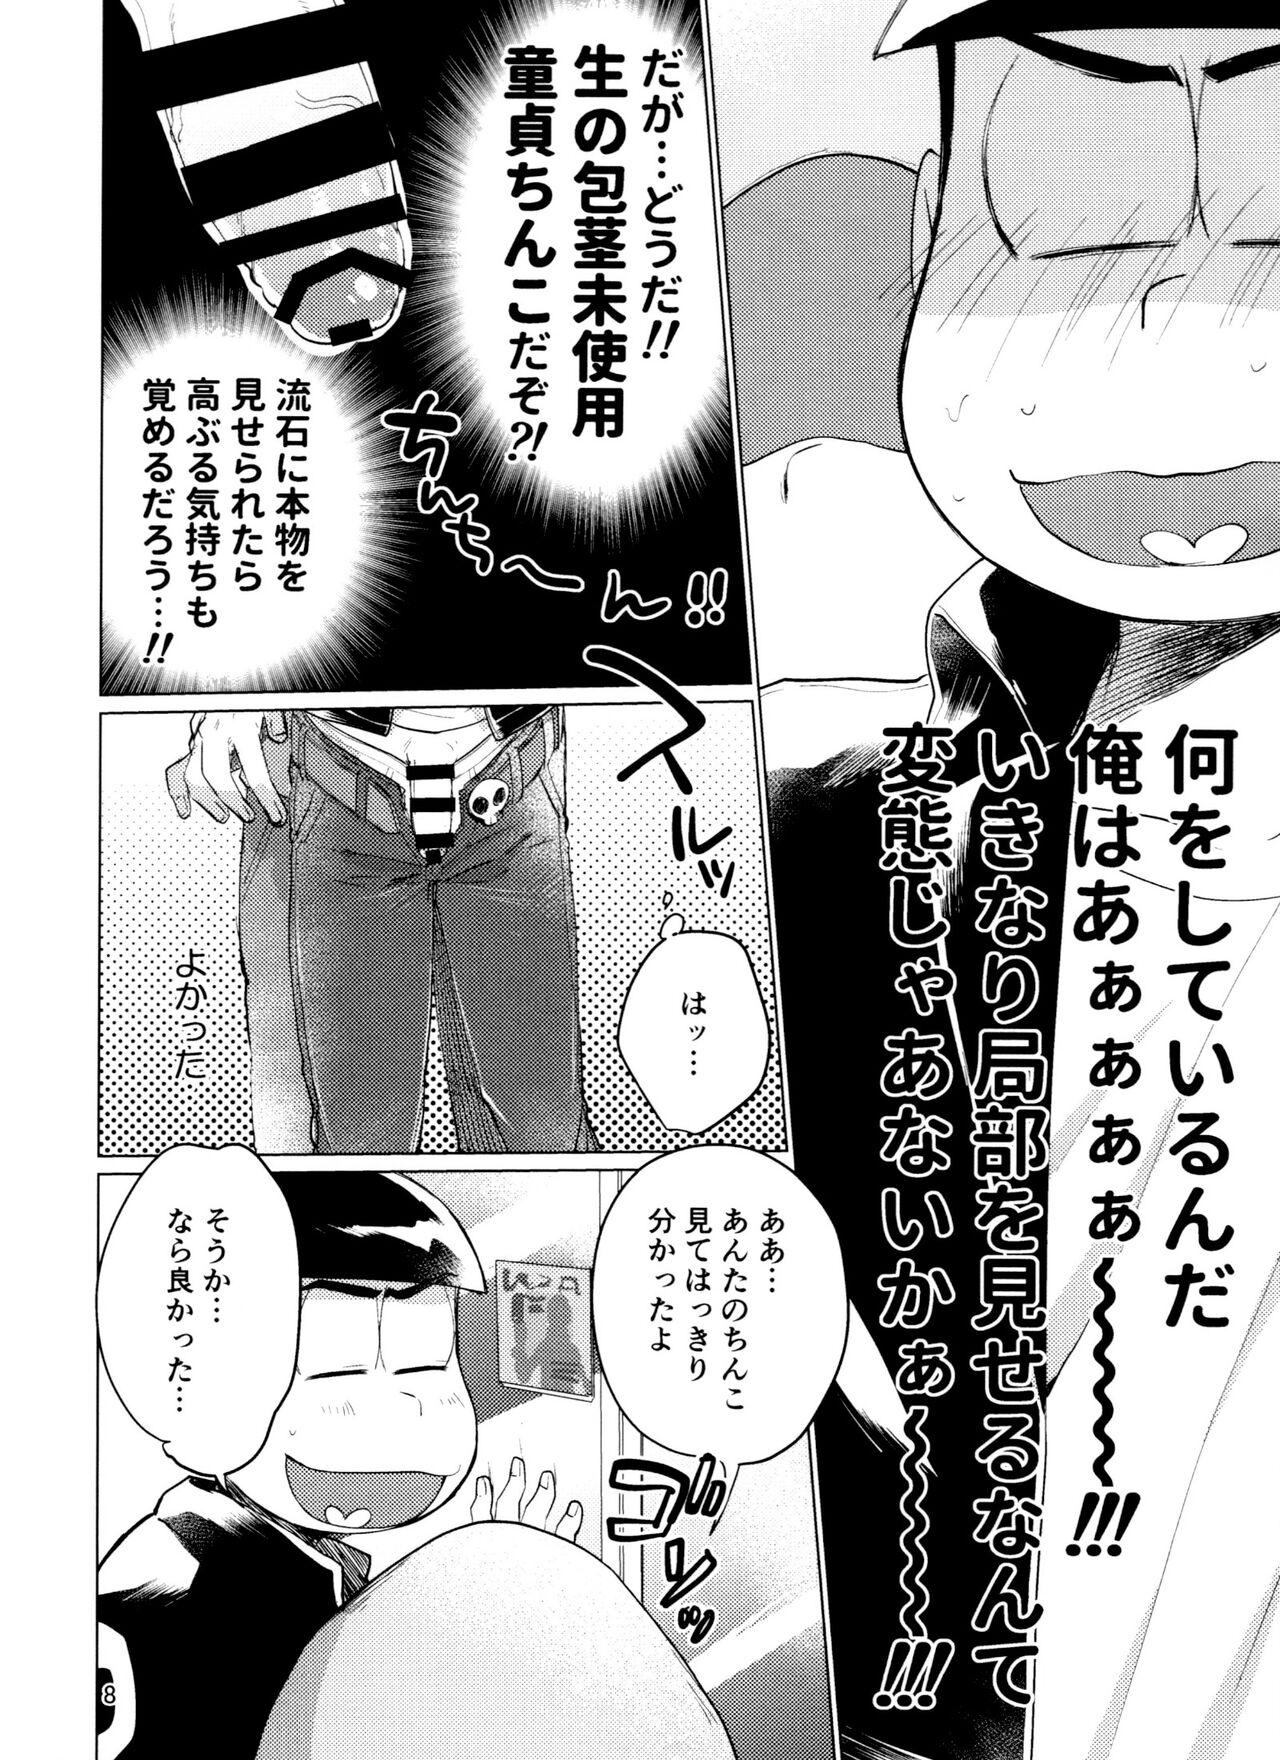 Hot Women Having Sex Yame Rarenai Tomaranai! - Osomatsu san Cruising - Page 8